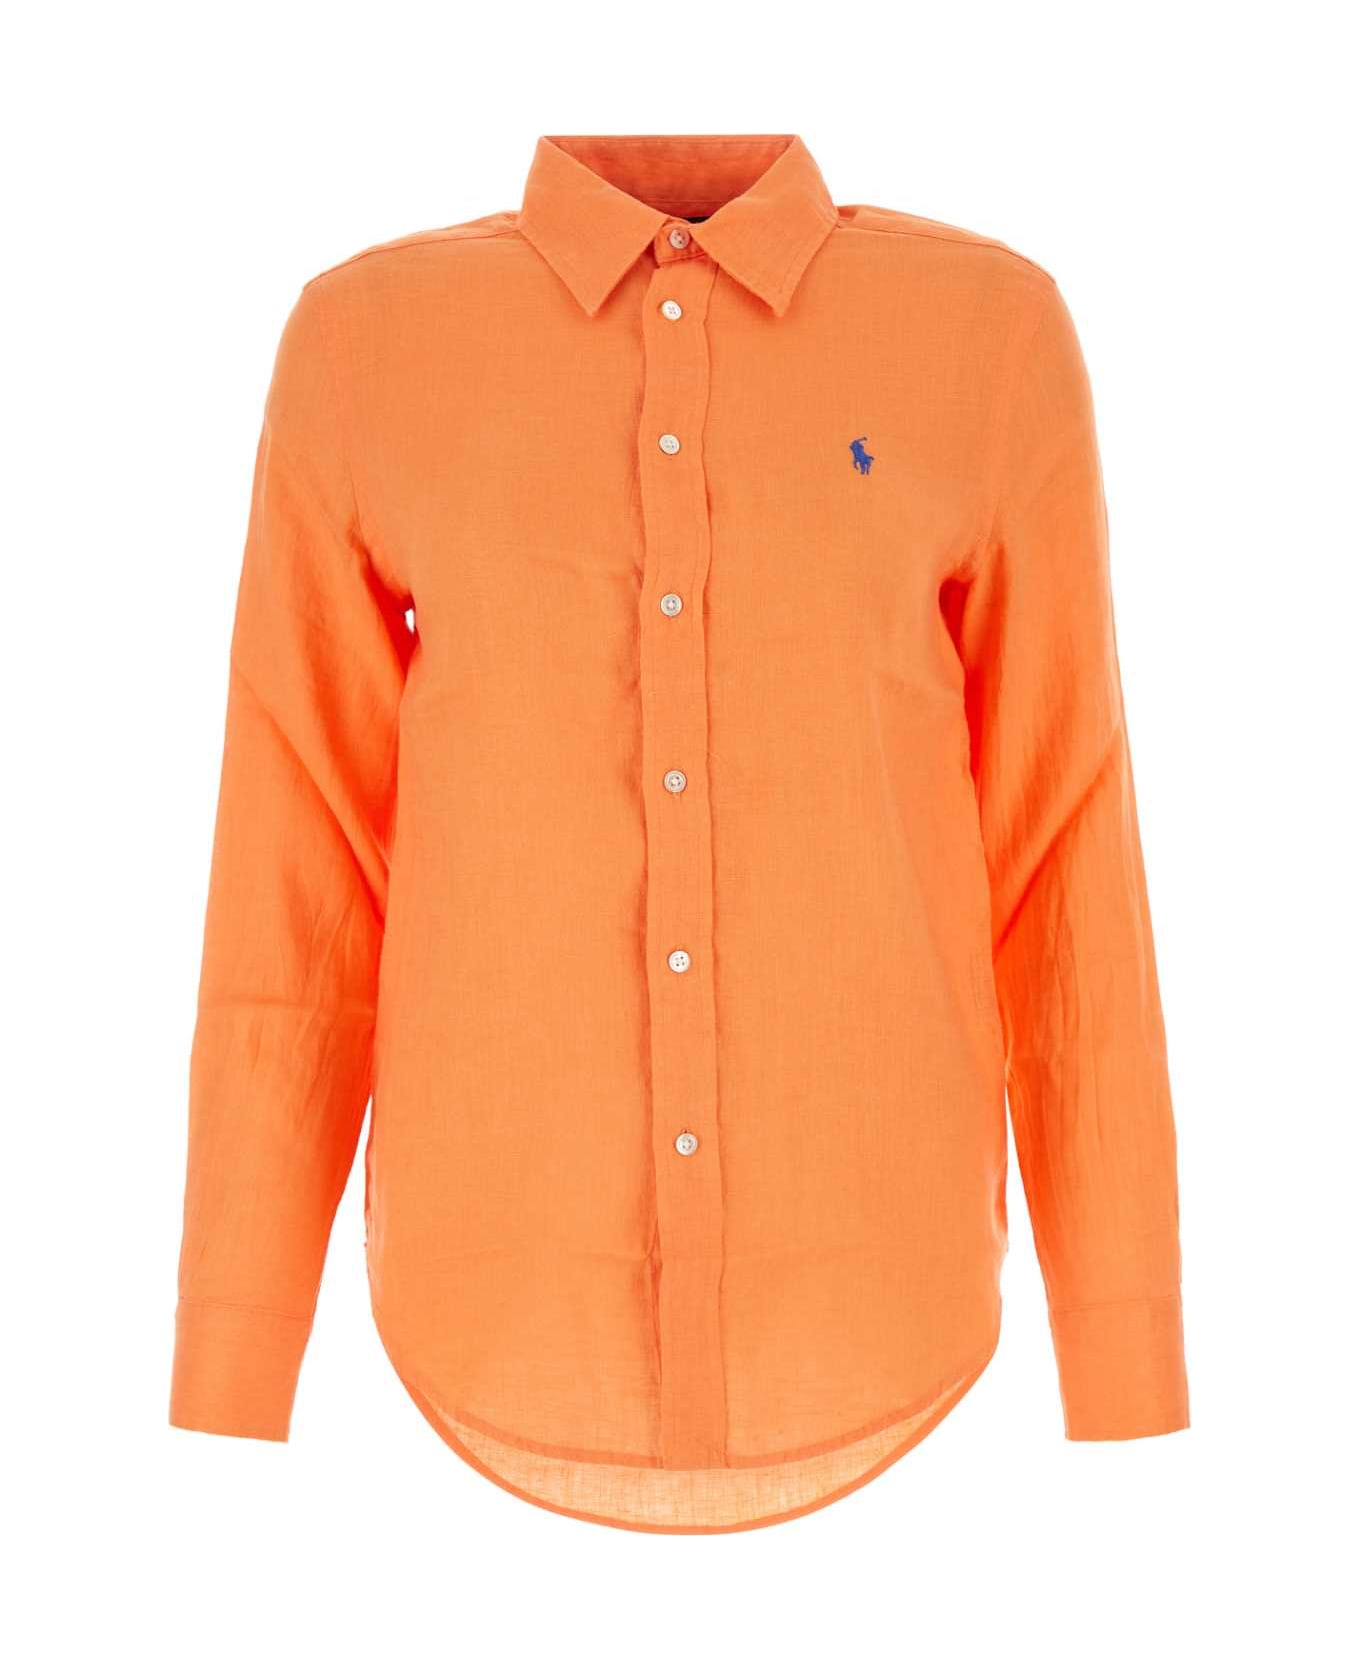 Polo Ralph Lauren Orange Linen Shirt - POPPY